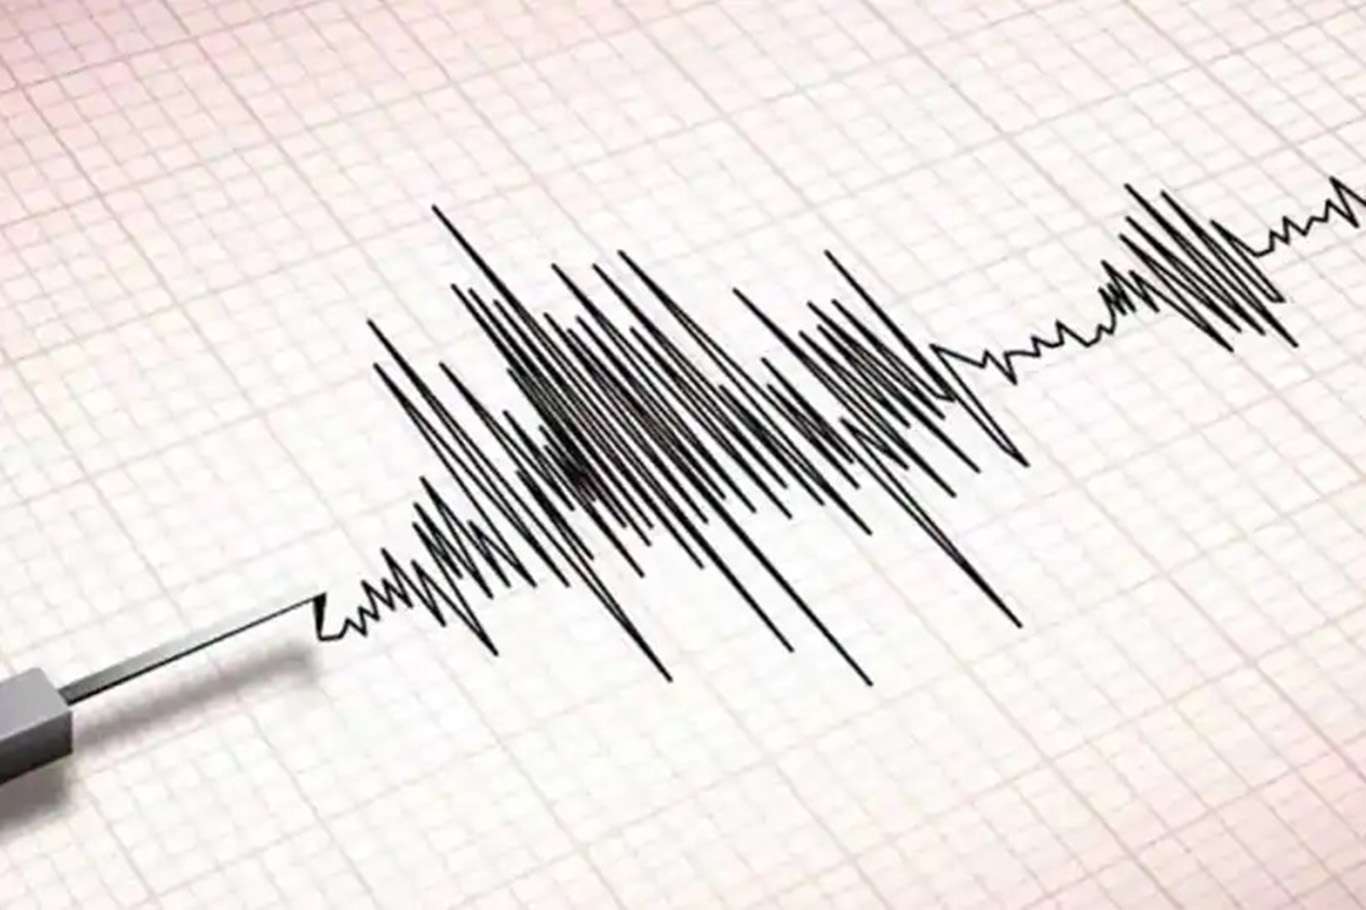 Datça açıklarında 3,5 büyüklüğünde deprem